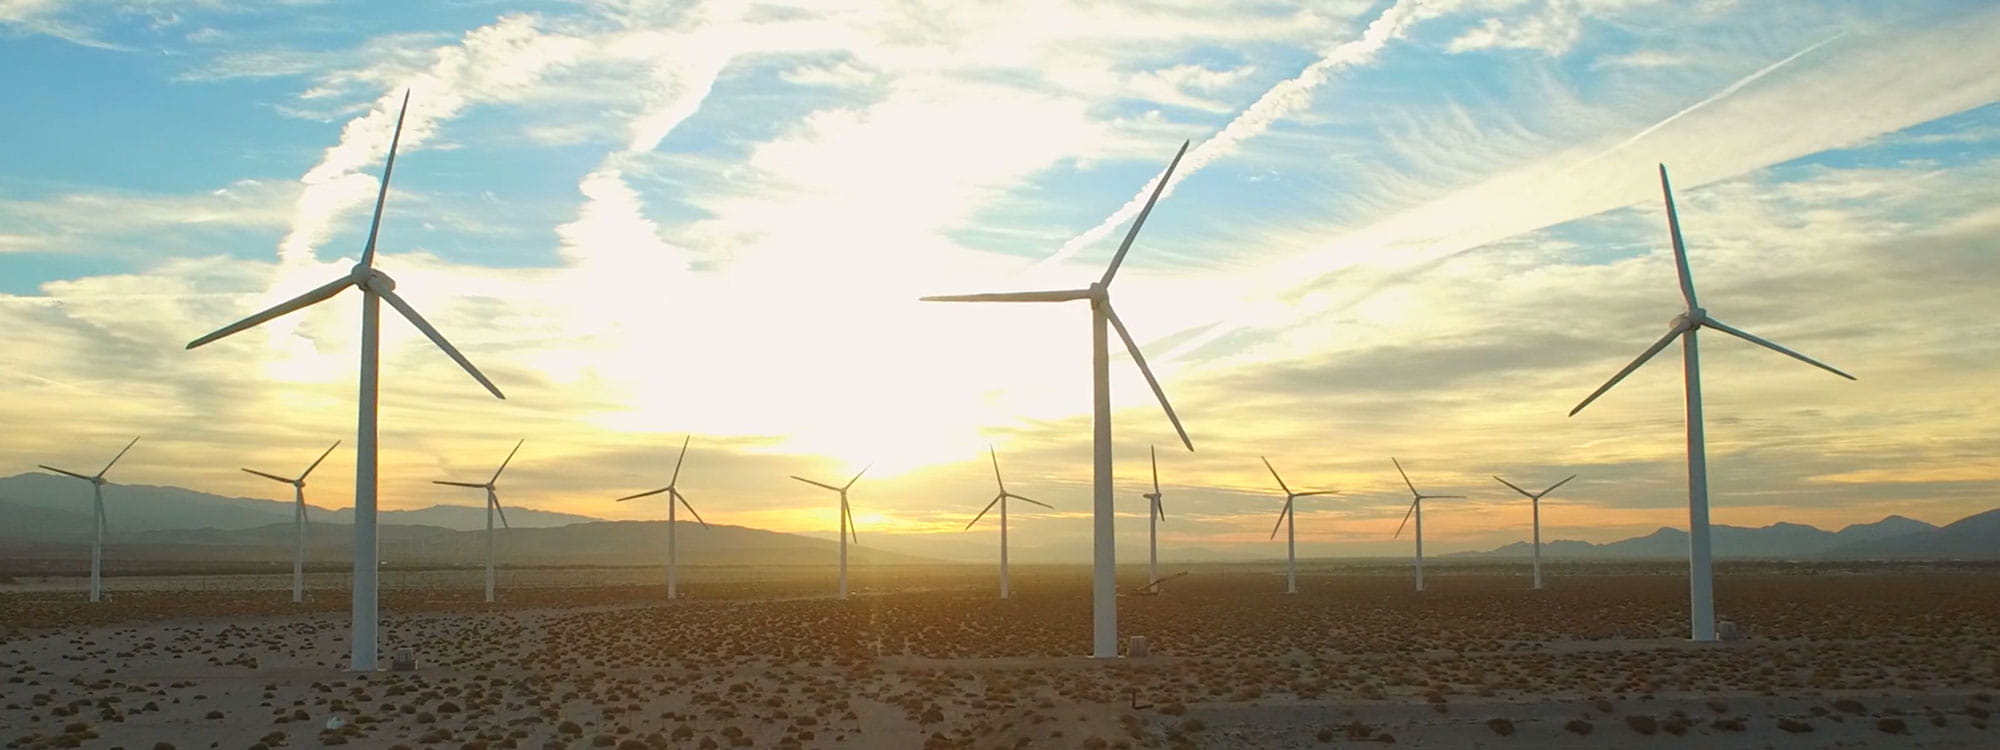 Windkrafträder auf dem Feld mit Sonnenuntergang